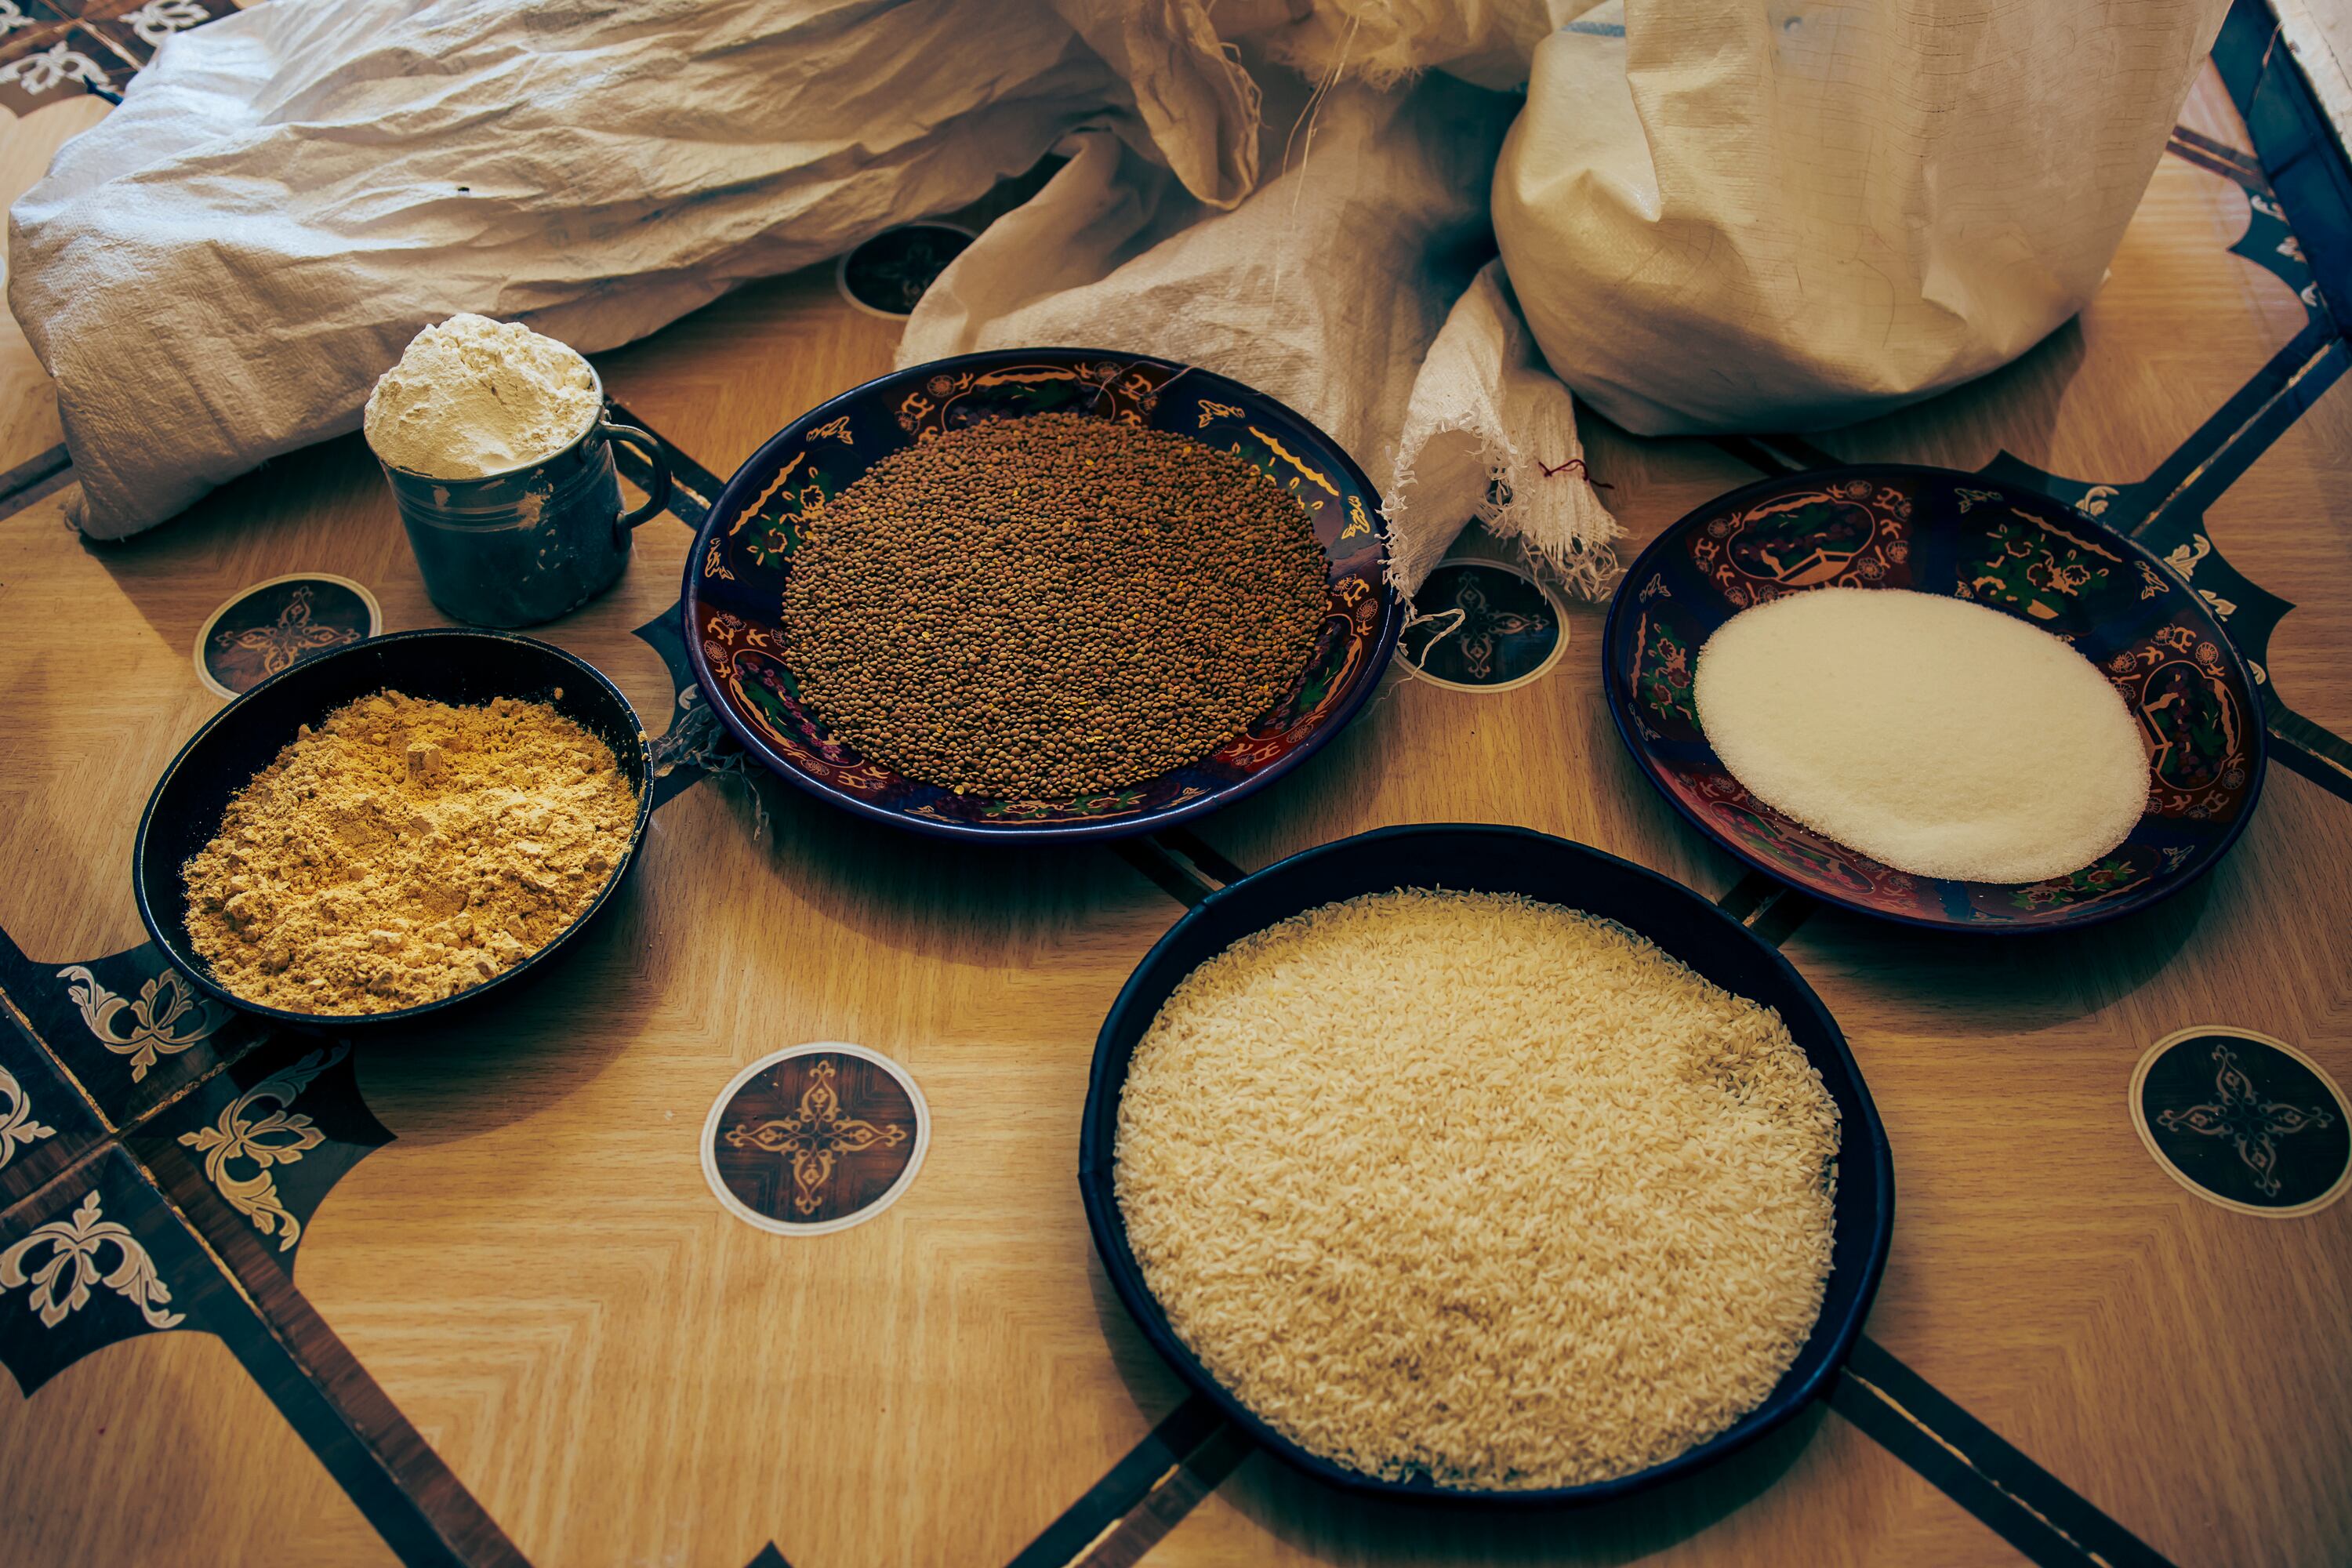 Raciones de comida que reciben los refugiados saharauis en Tinduf (Argelia) para un mes por persona. El Programa Mundial de Alimentos ha recortado las raciones un 30% al no contar con fondos suficientes para mantener la compra y distribución de la canasta básica que repartía, cuyos productos se han encarecido por la inflación. 